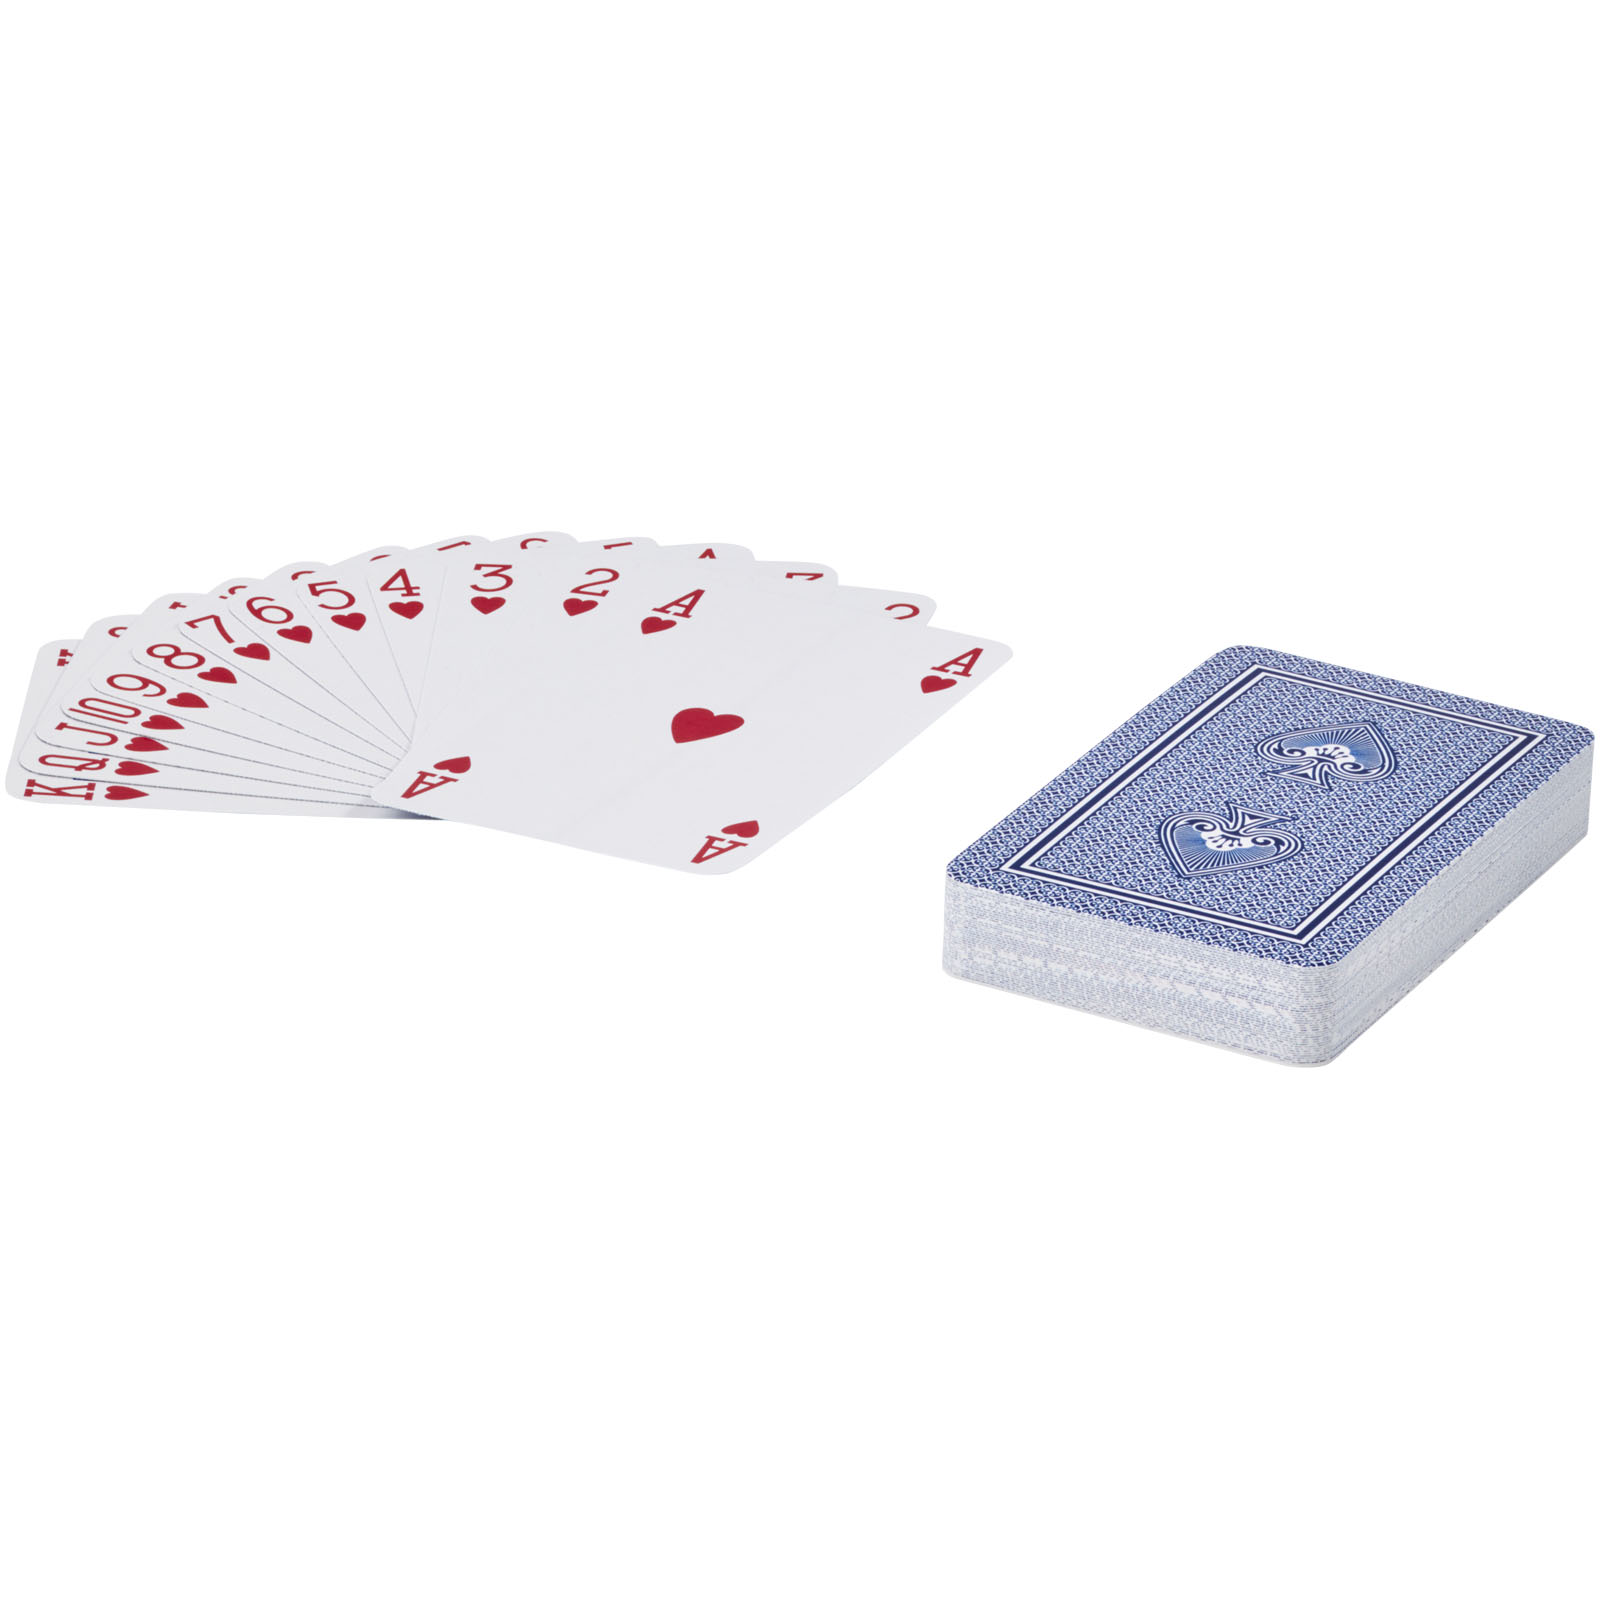 Jeux d'intérieur publicitaires - Ensemble de cartes à jouer Ace - 3